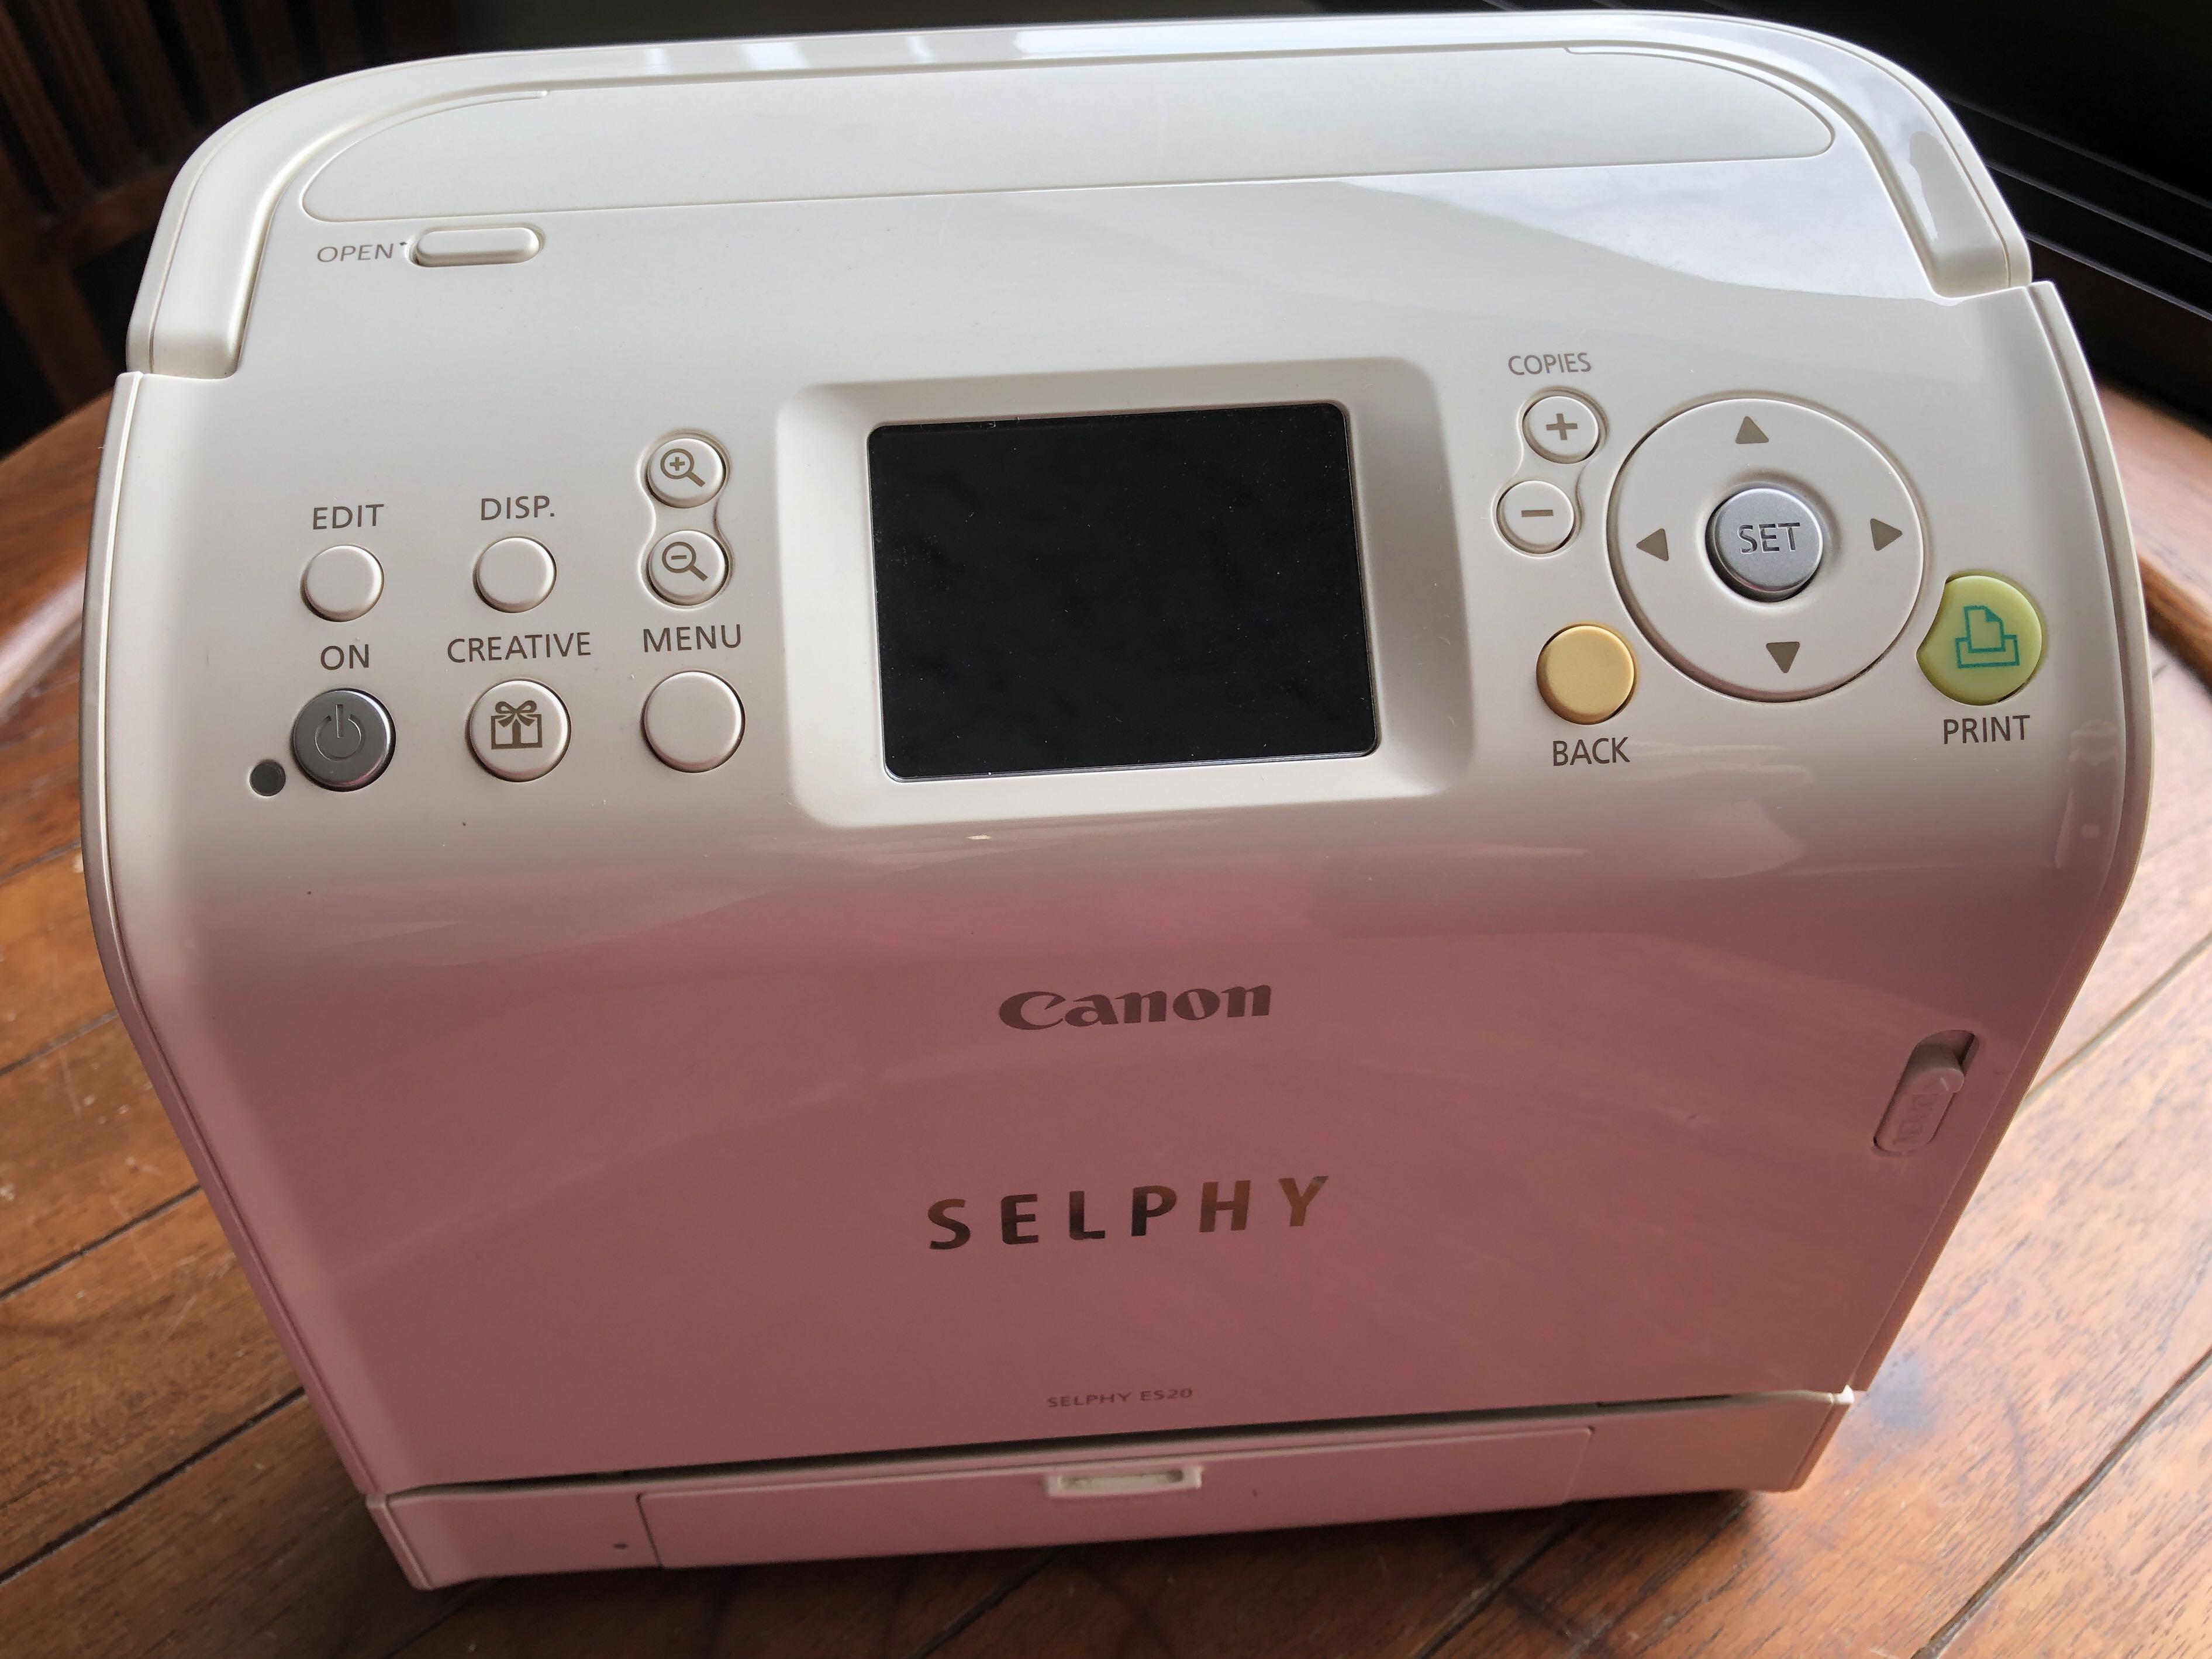 Canon selphy cp810 printer driver for windows 10 dell